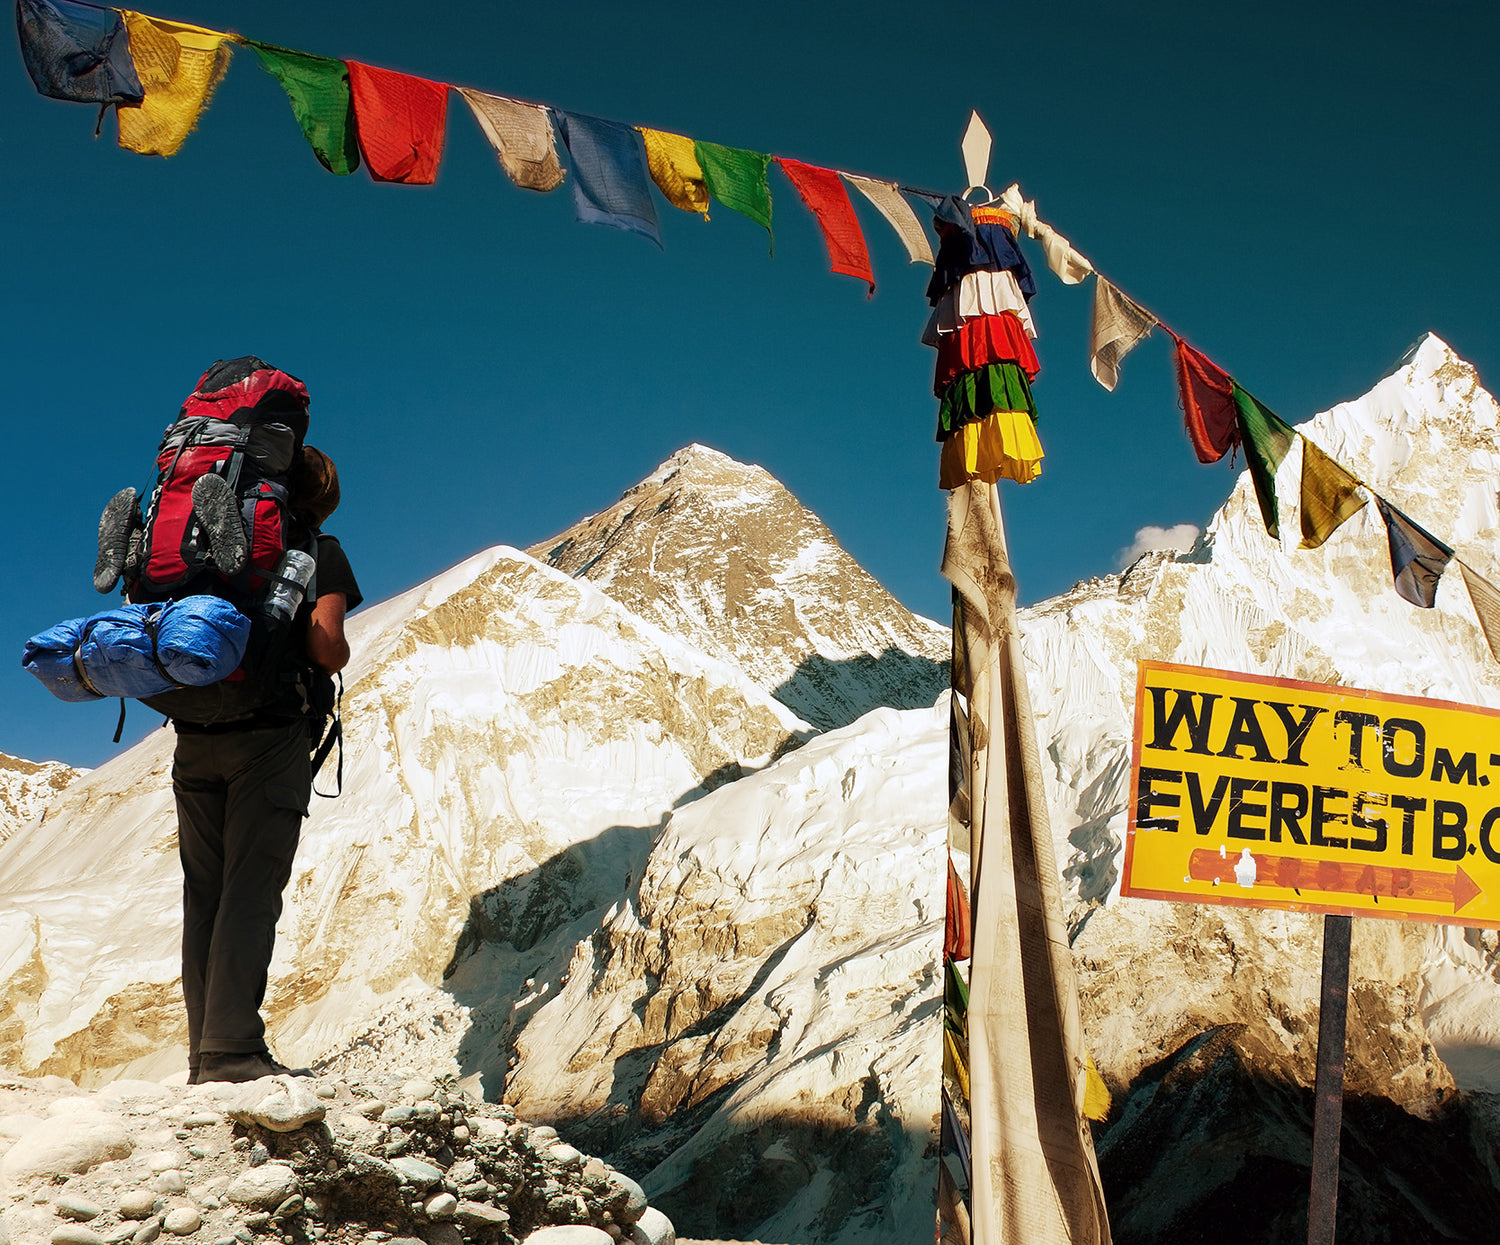 Rucksack Survives Trek to Everest Base Camp